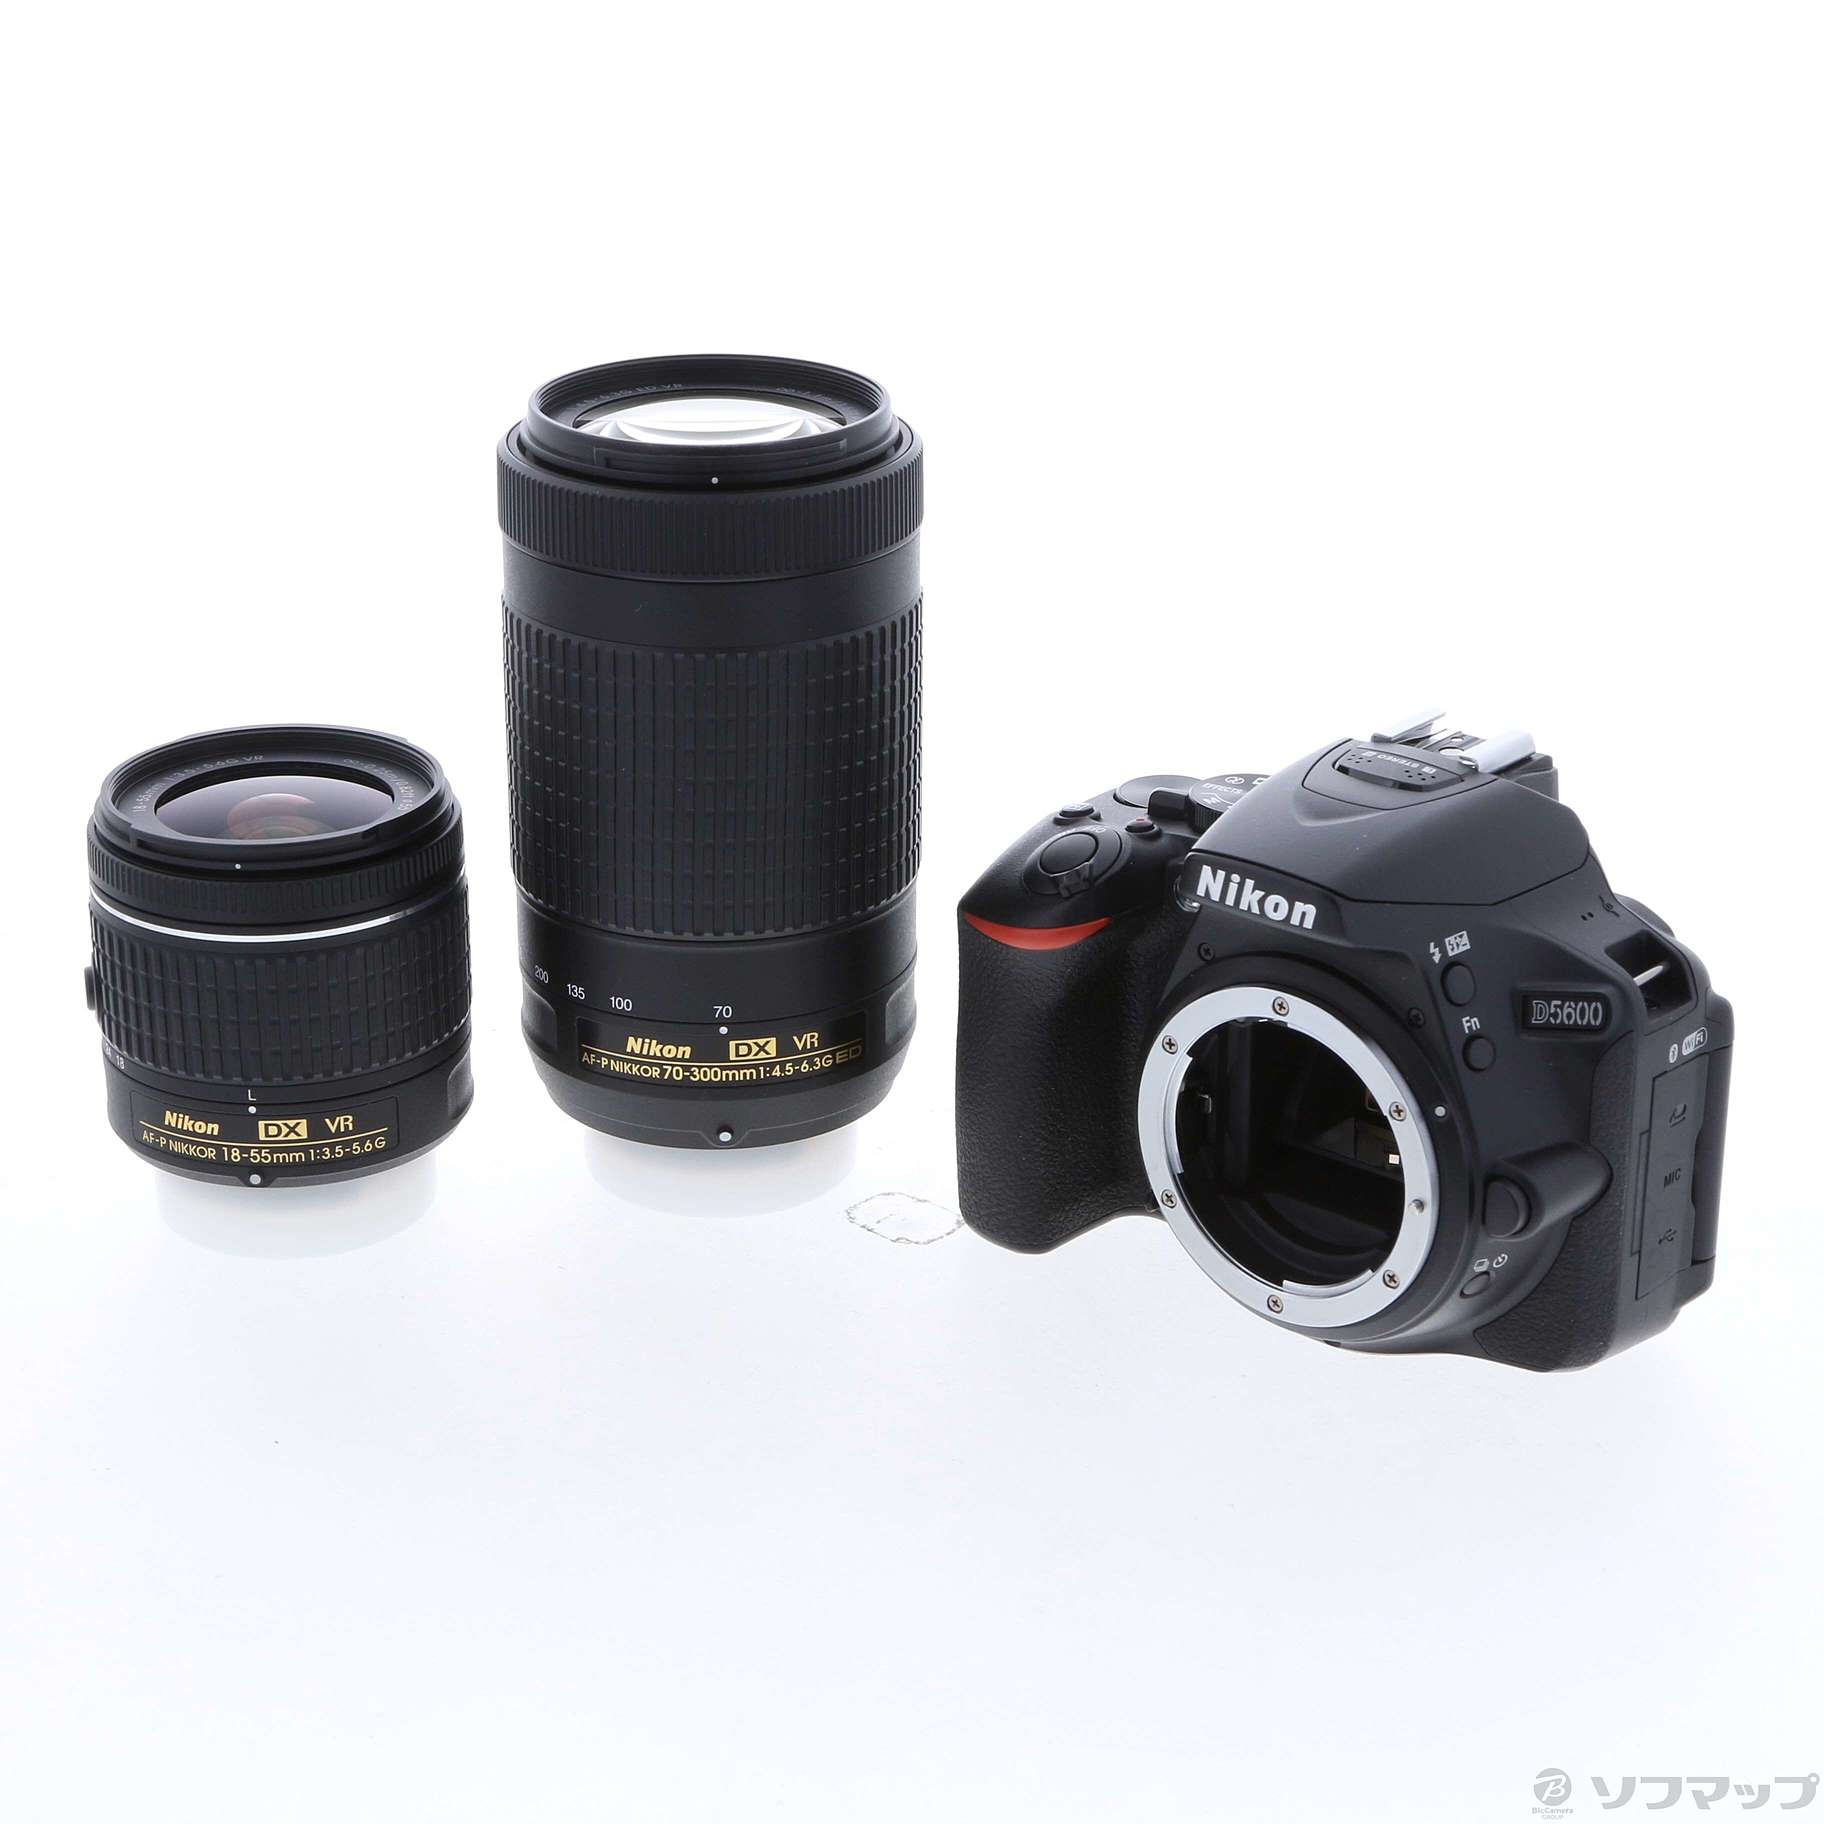 0円 芸能人愛用 Nikon D5600 ダブルズームキット 新品未使用 3年長期保証